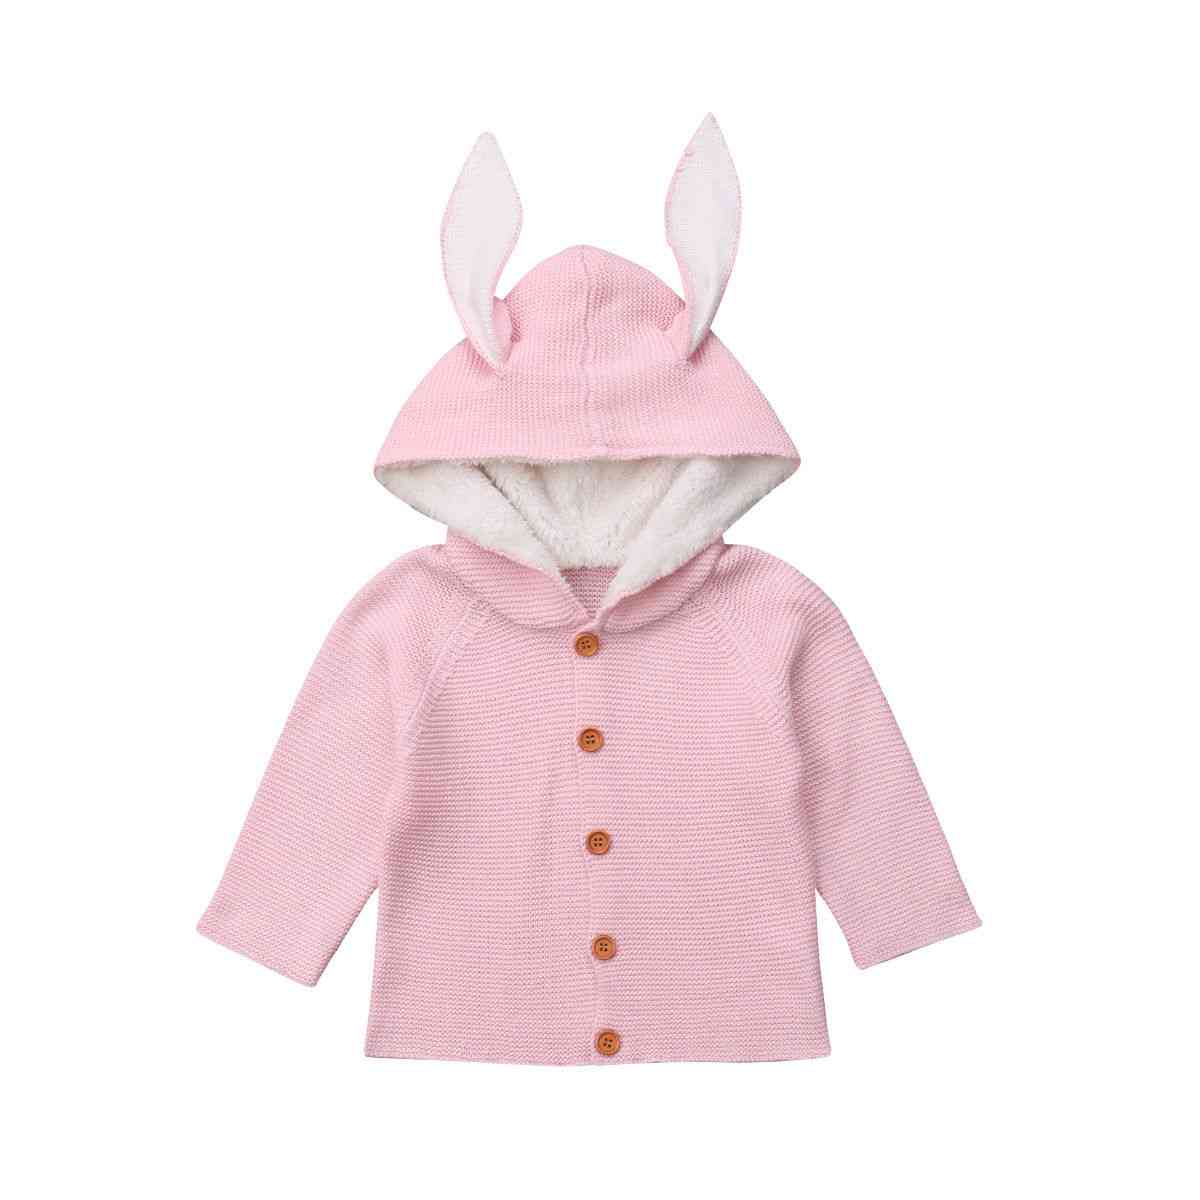 Babykleding warme jassen pasgeboren peuter kinderen meisjes jongen gebreide trui - roze / 12m